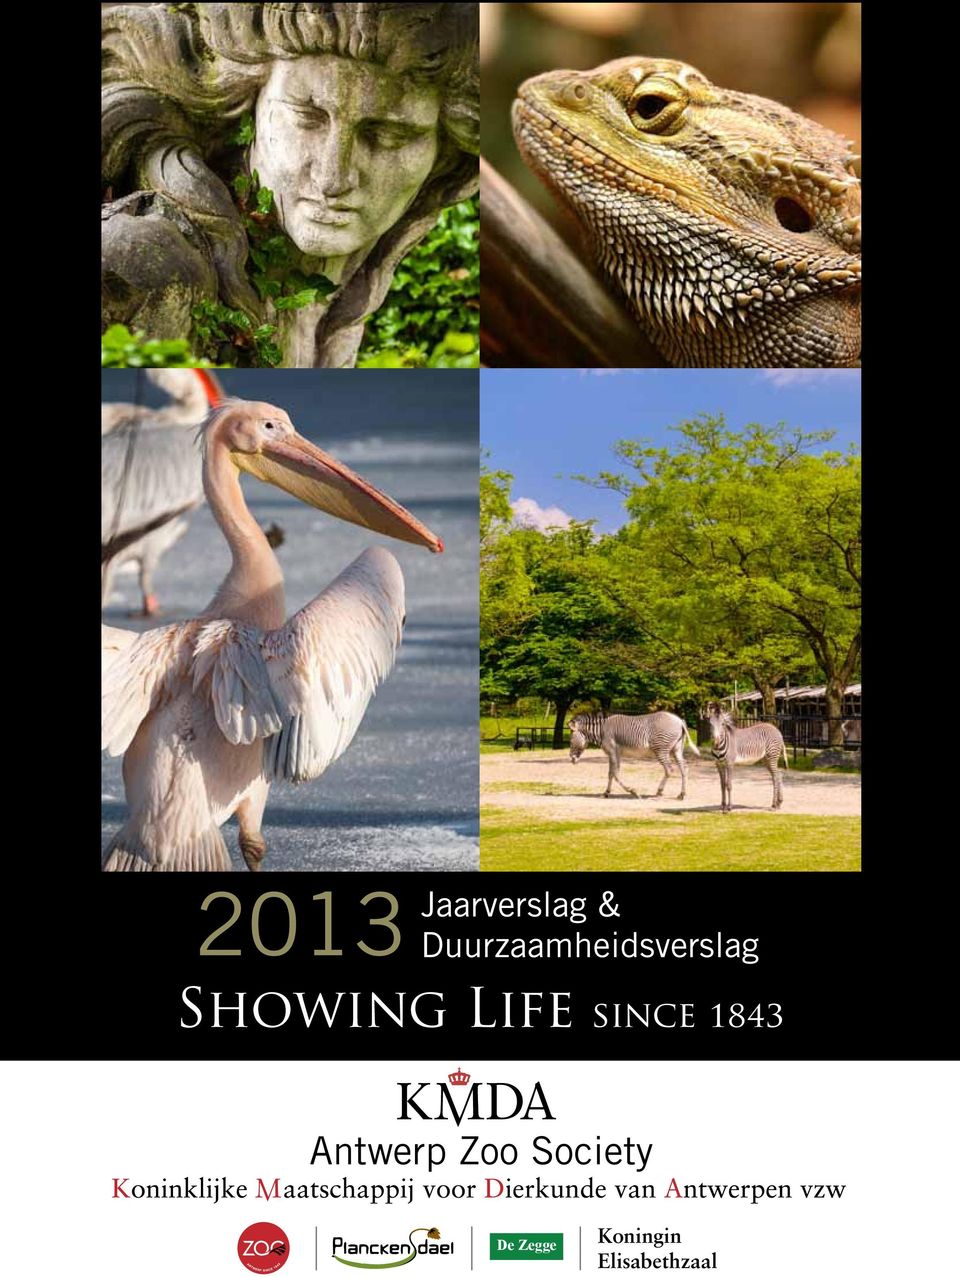 Life since 1843 Antwerp Zoo